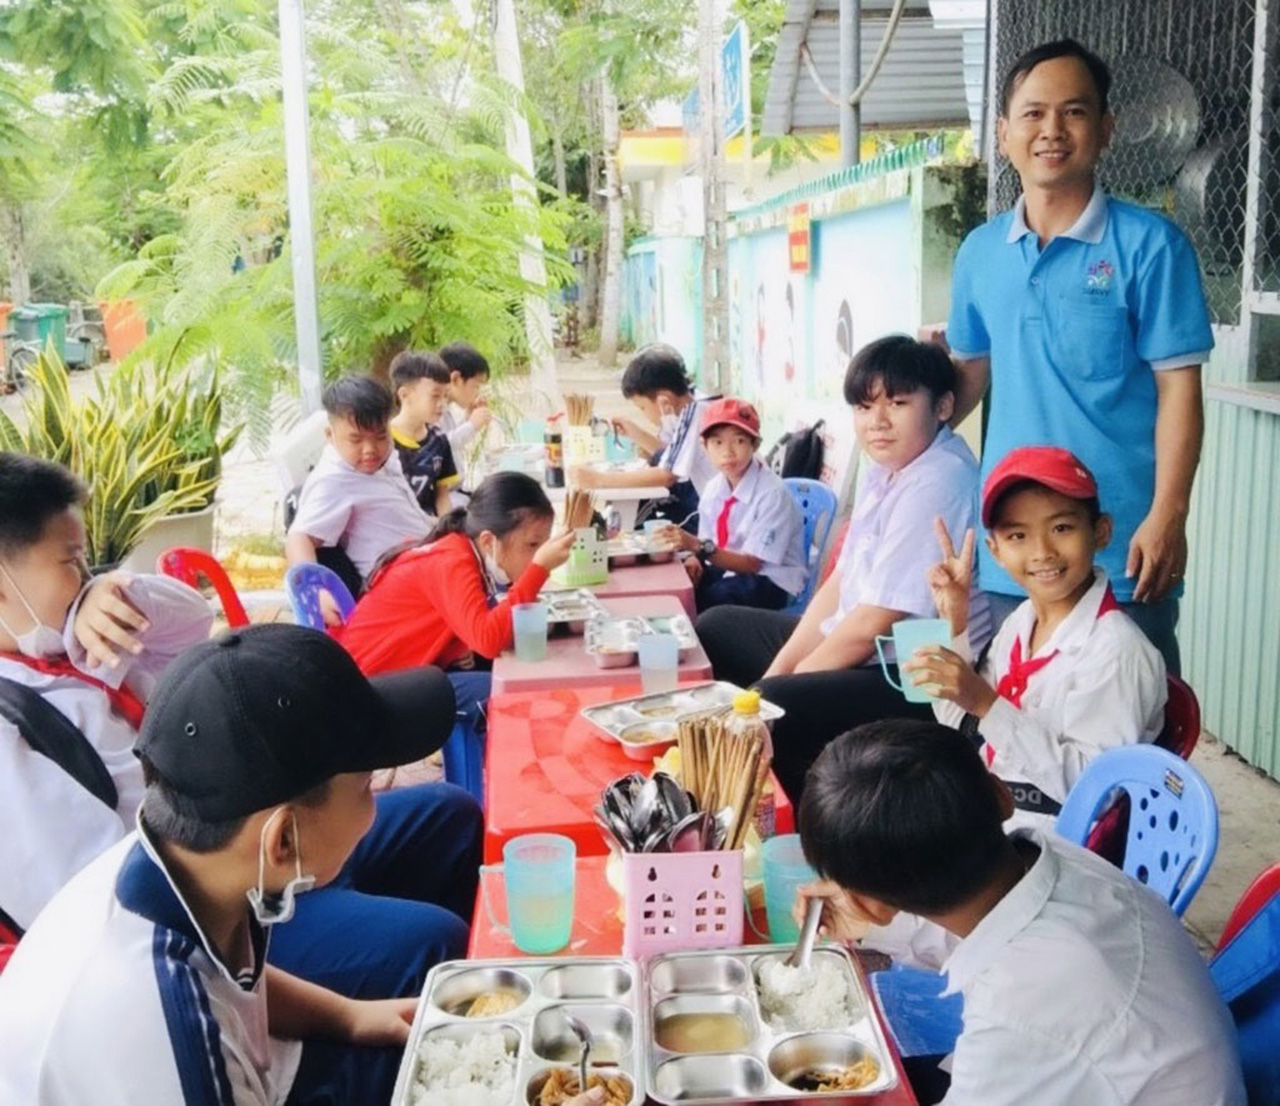 Đóng góp của anh Trung tại Bếp ăn chay từ bi ở xã Đại Thành, góp phần giúp các em nhỏ khó khăn có bữa cơm miễn phí - Ảnh Thanh Niên